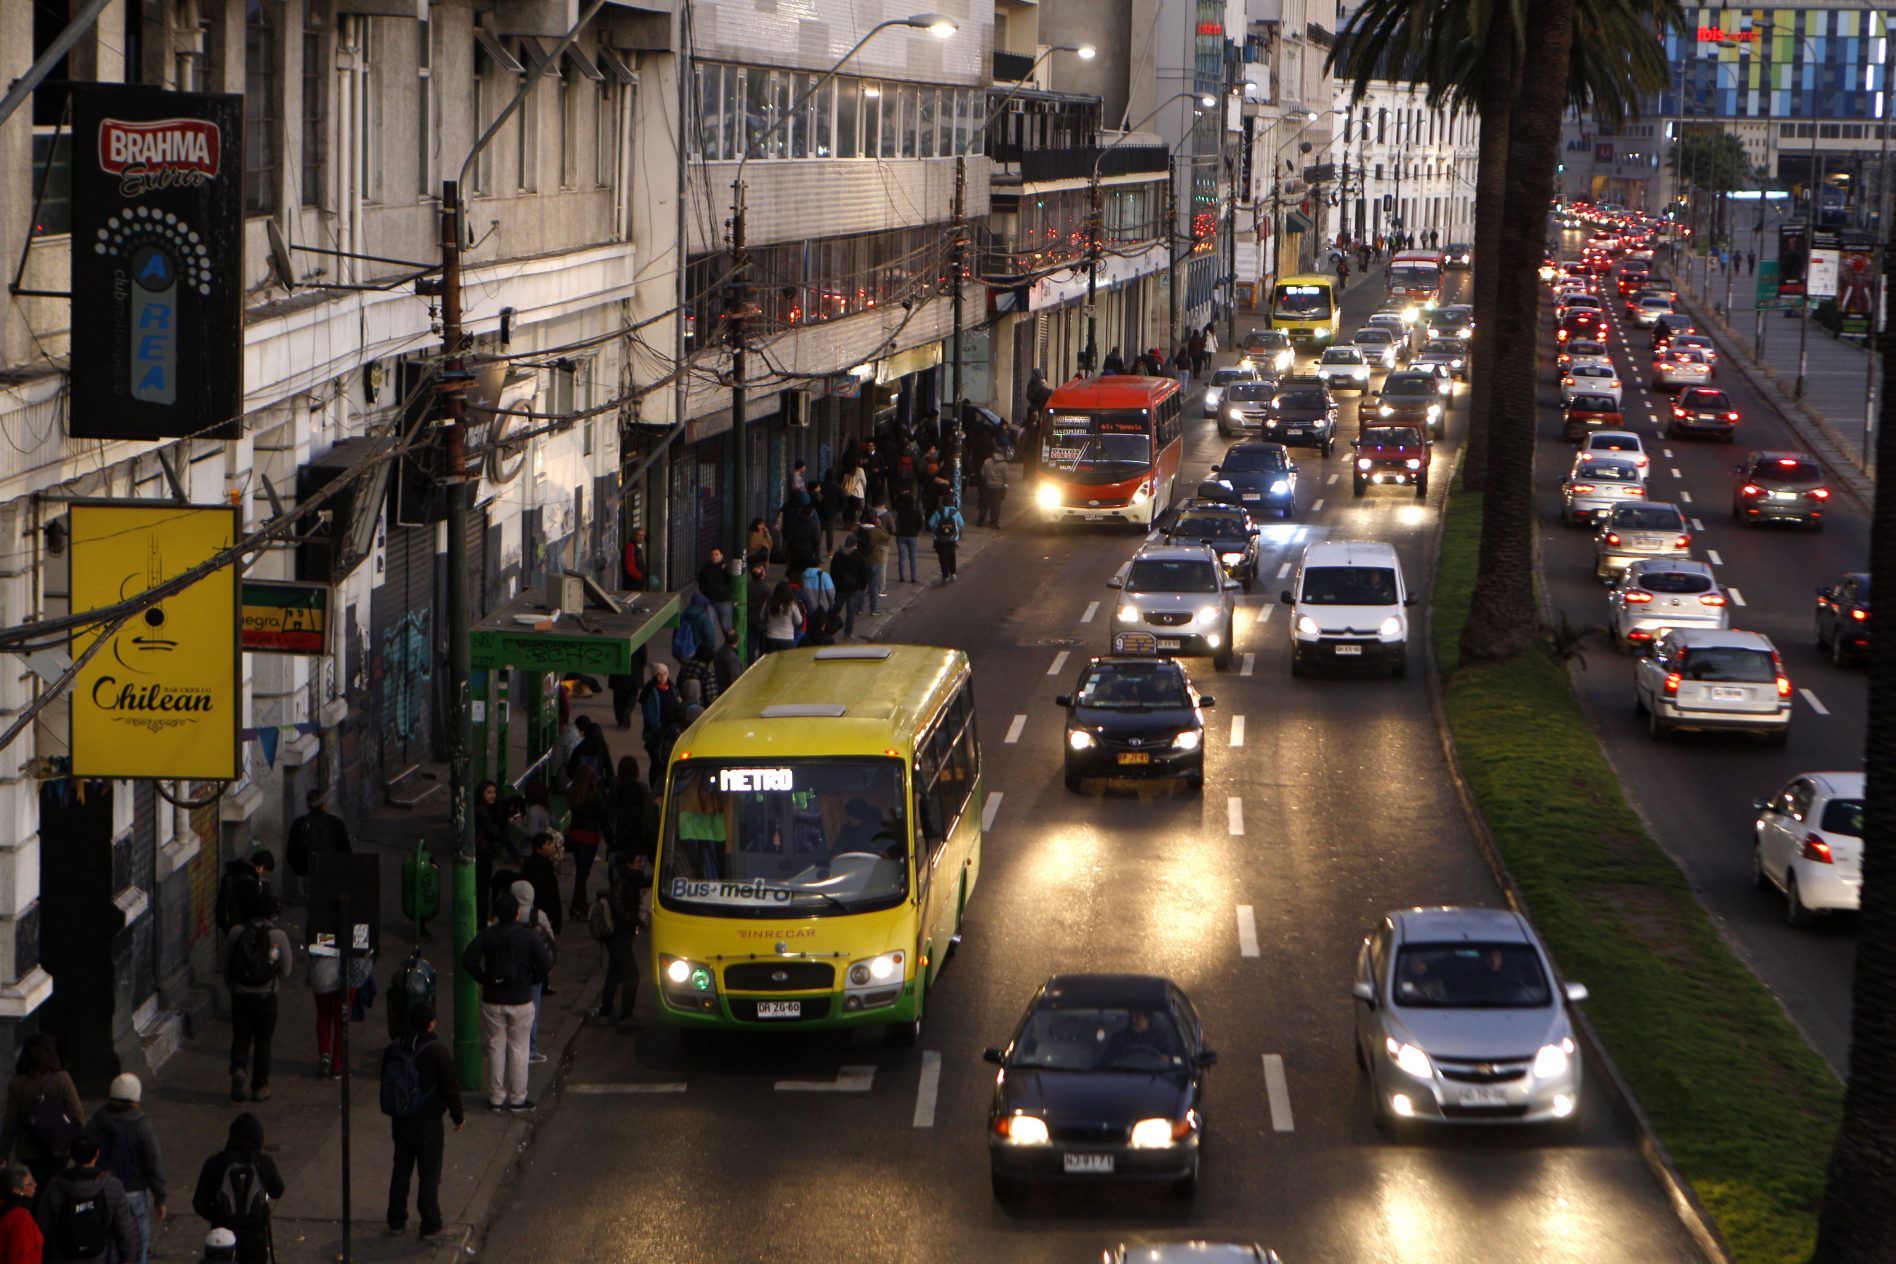 Valparaíso, 18 de agosto de 2015.
Hoy se efectúa un paro del transporte público en demanda de subsidios de parte del gobierno central.
Andrés Piña/Aton Chile